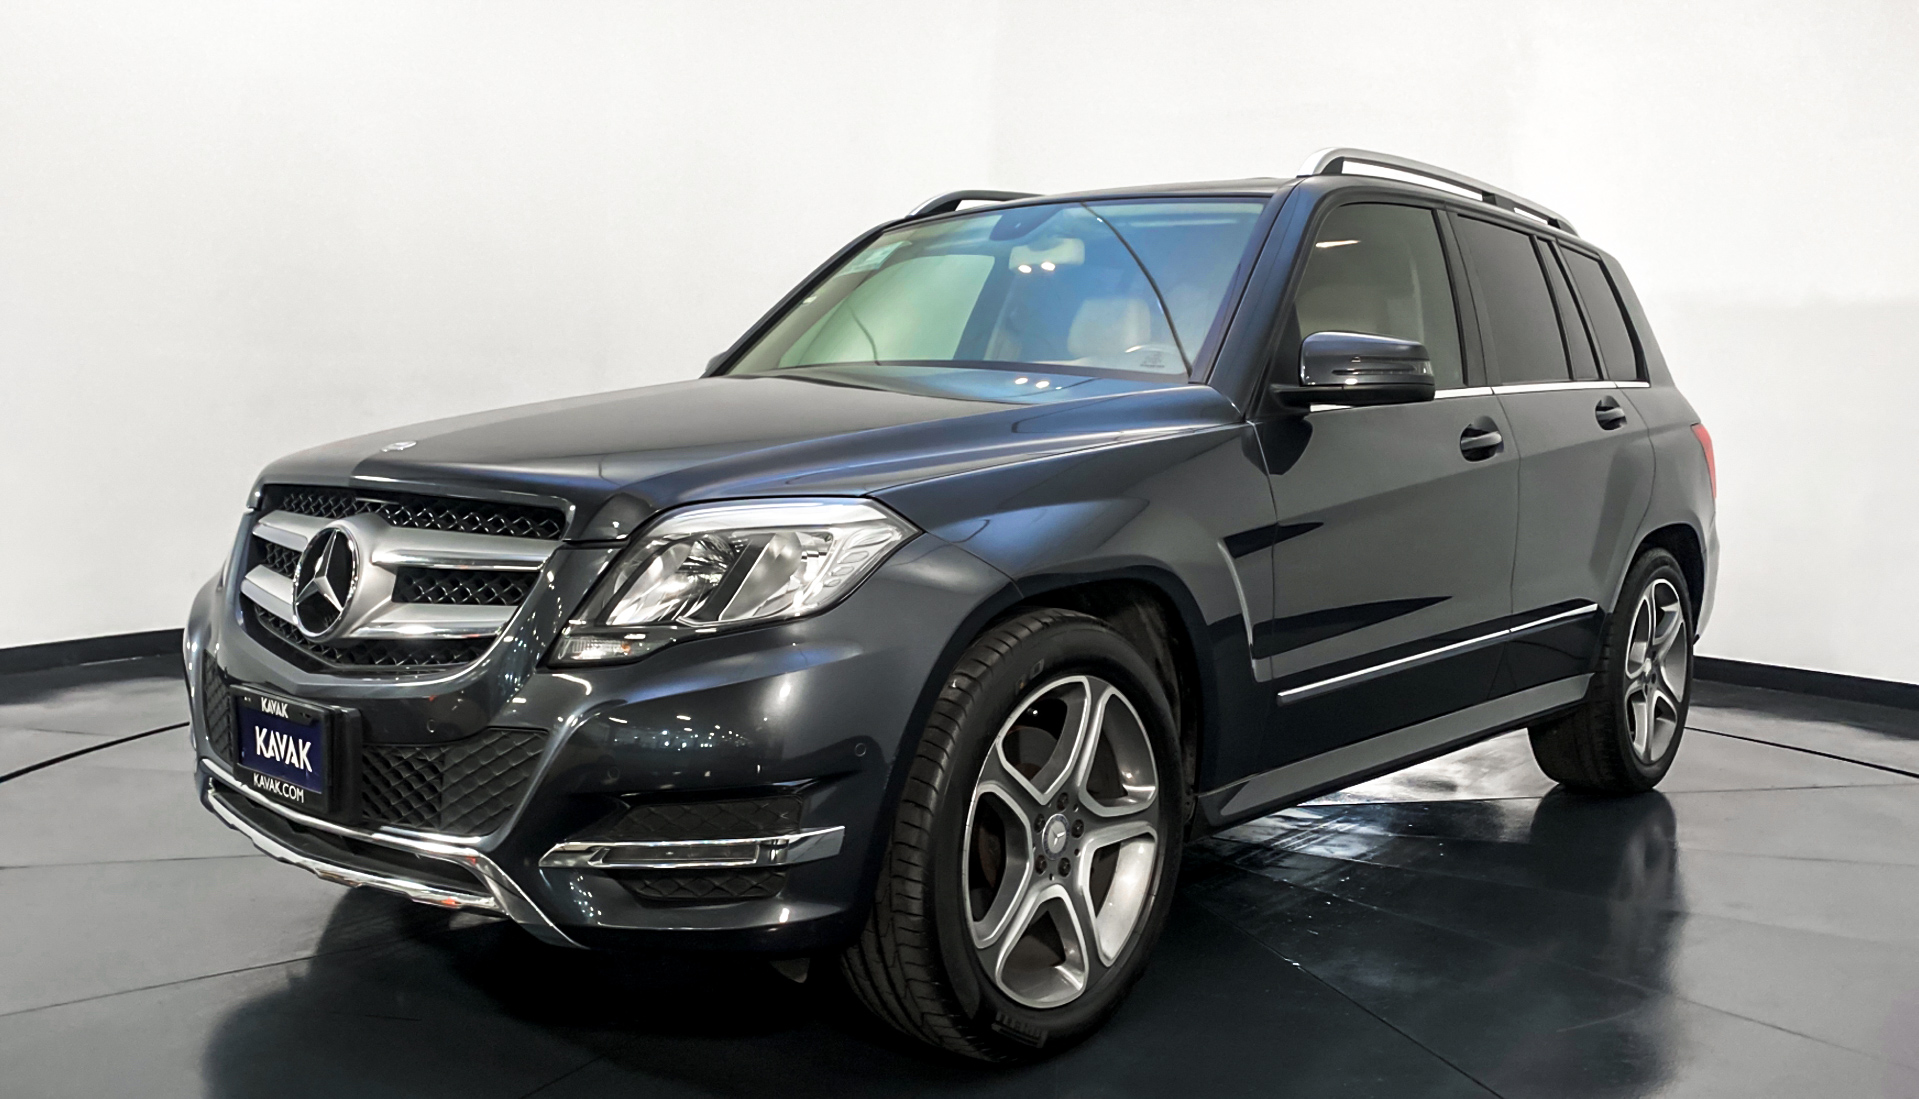 Mercedes Benz Clase GLK 2014 #24735 | 62661 KM | Precio: $299999